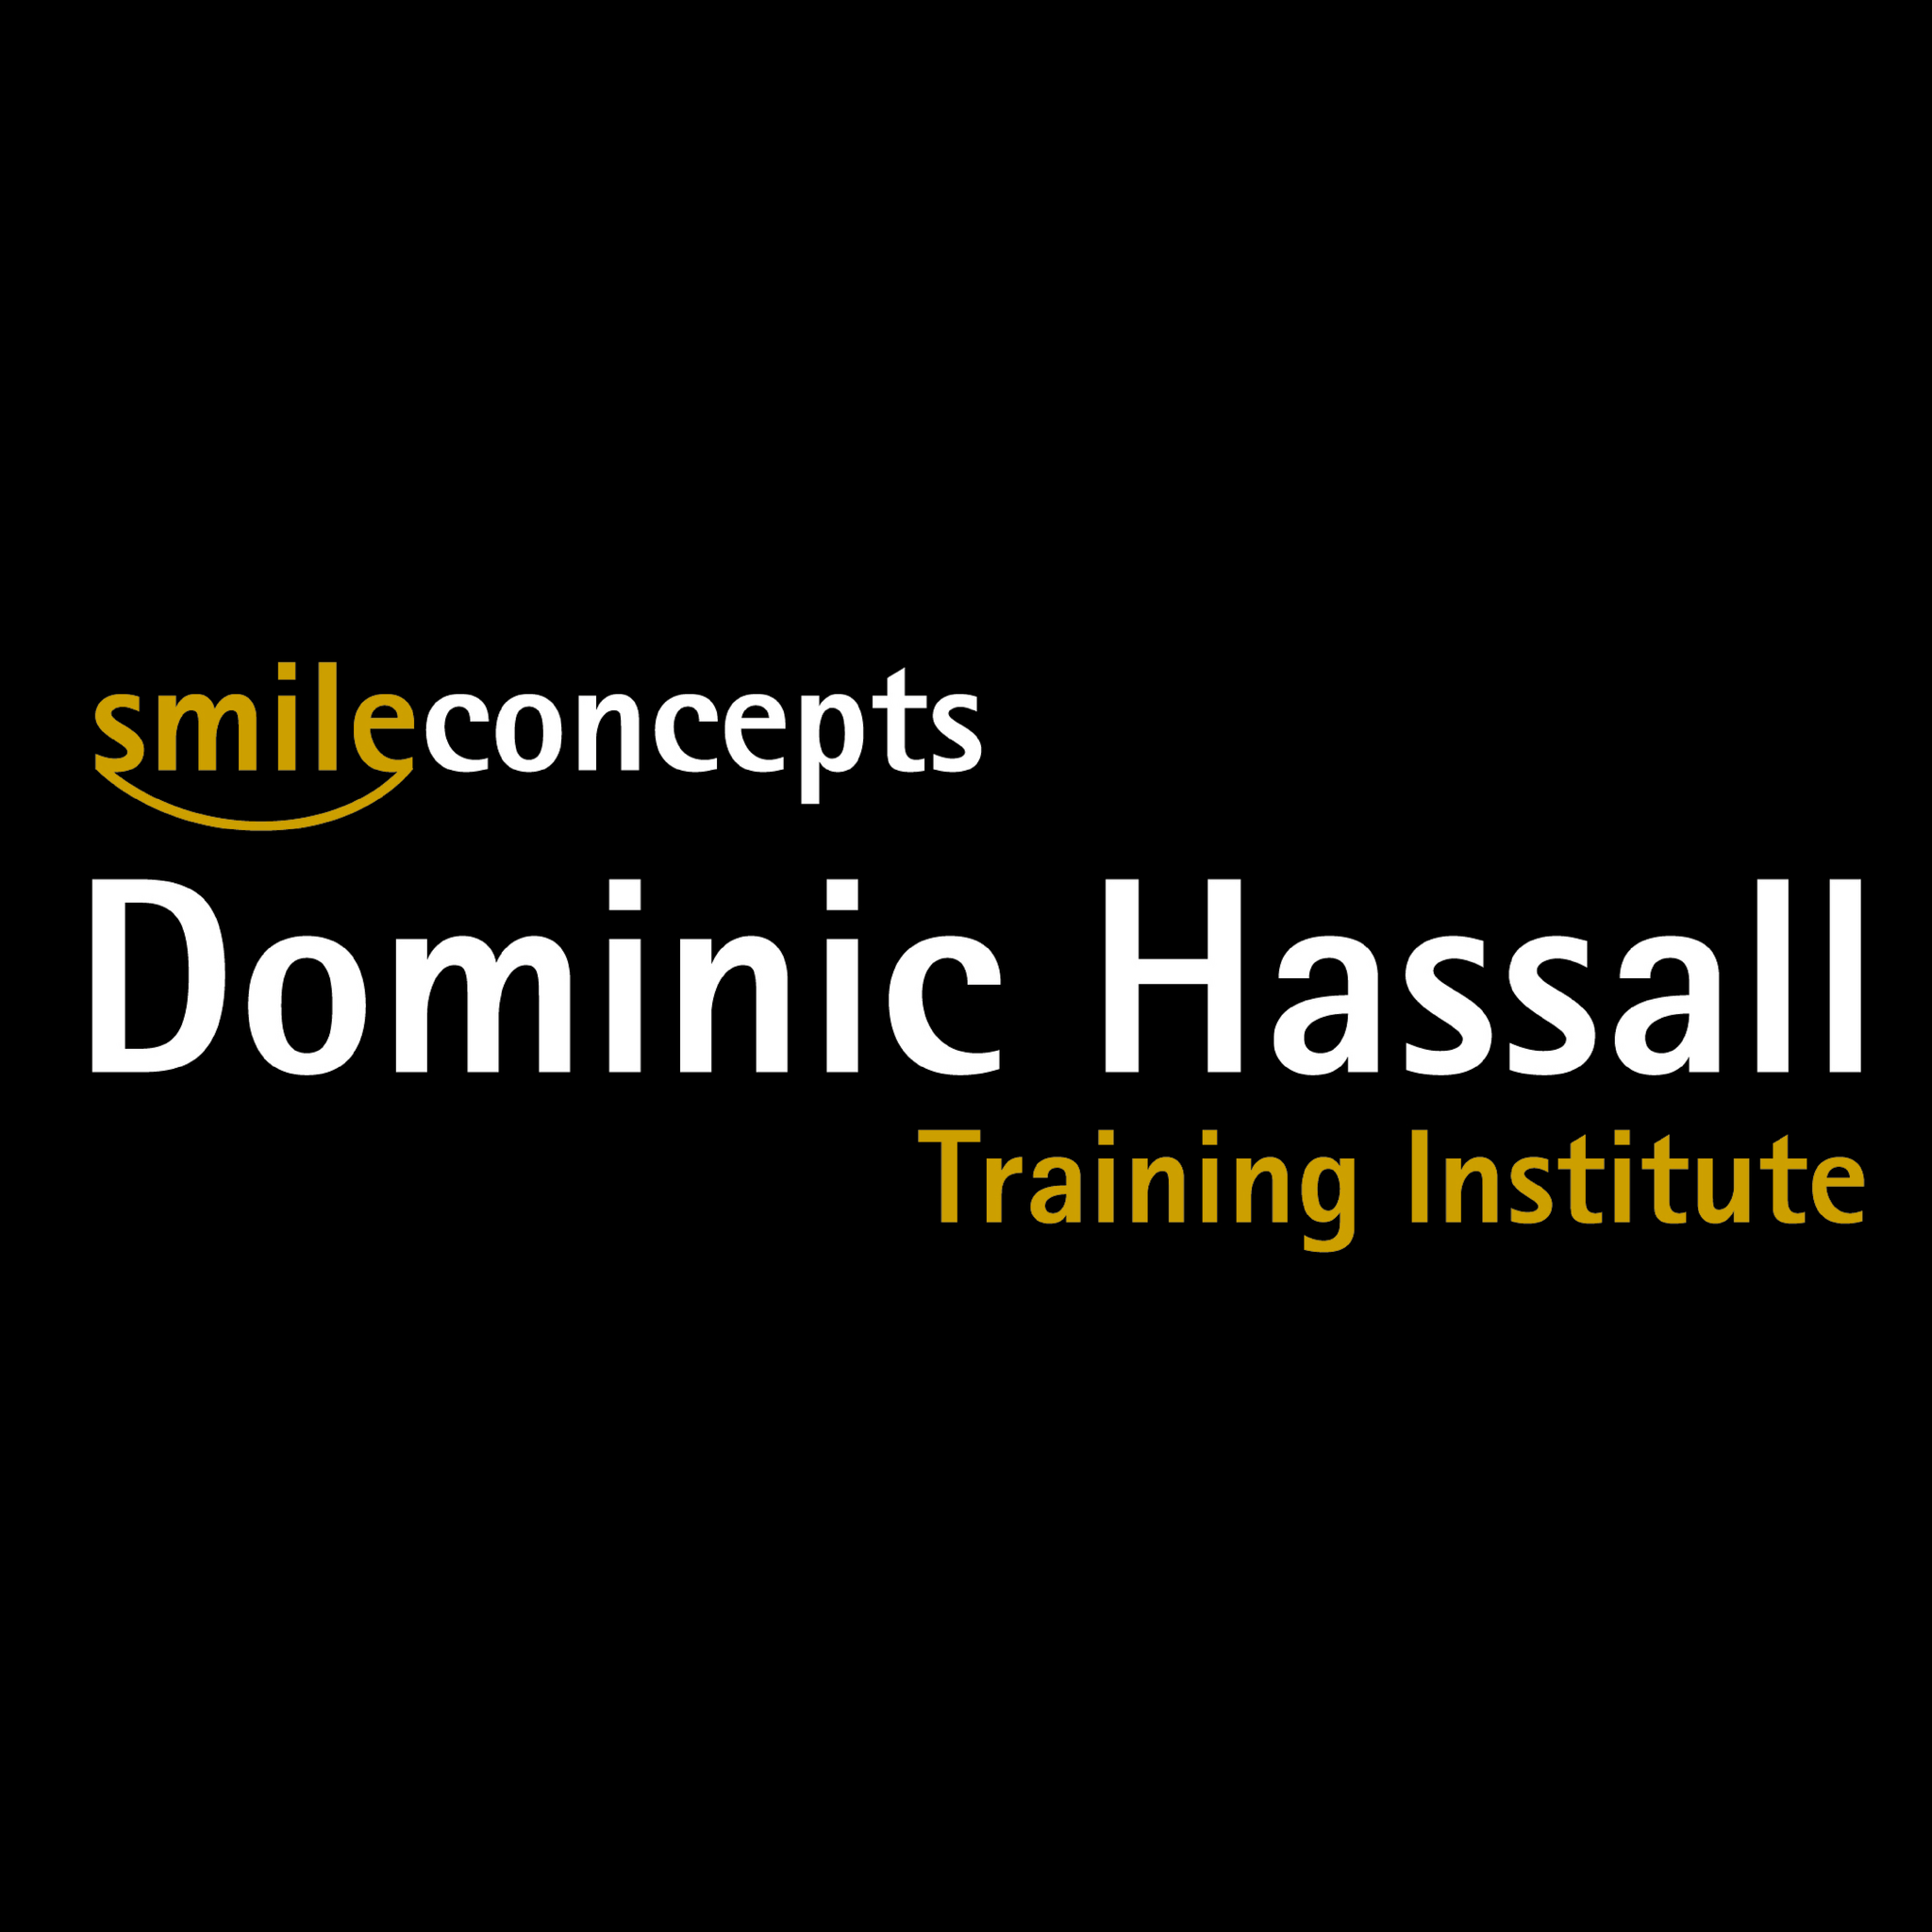 Dominic Hassall